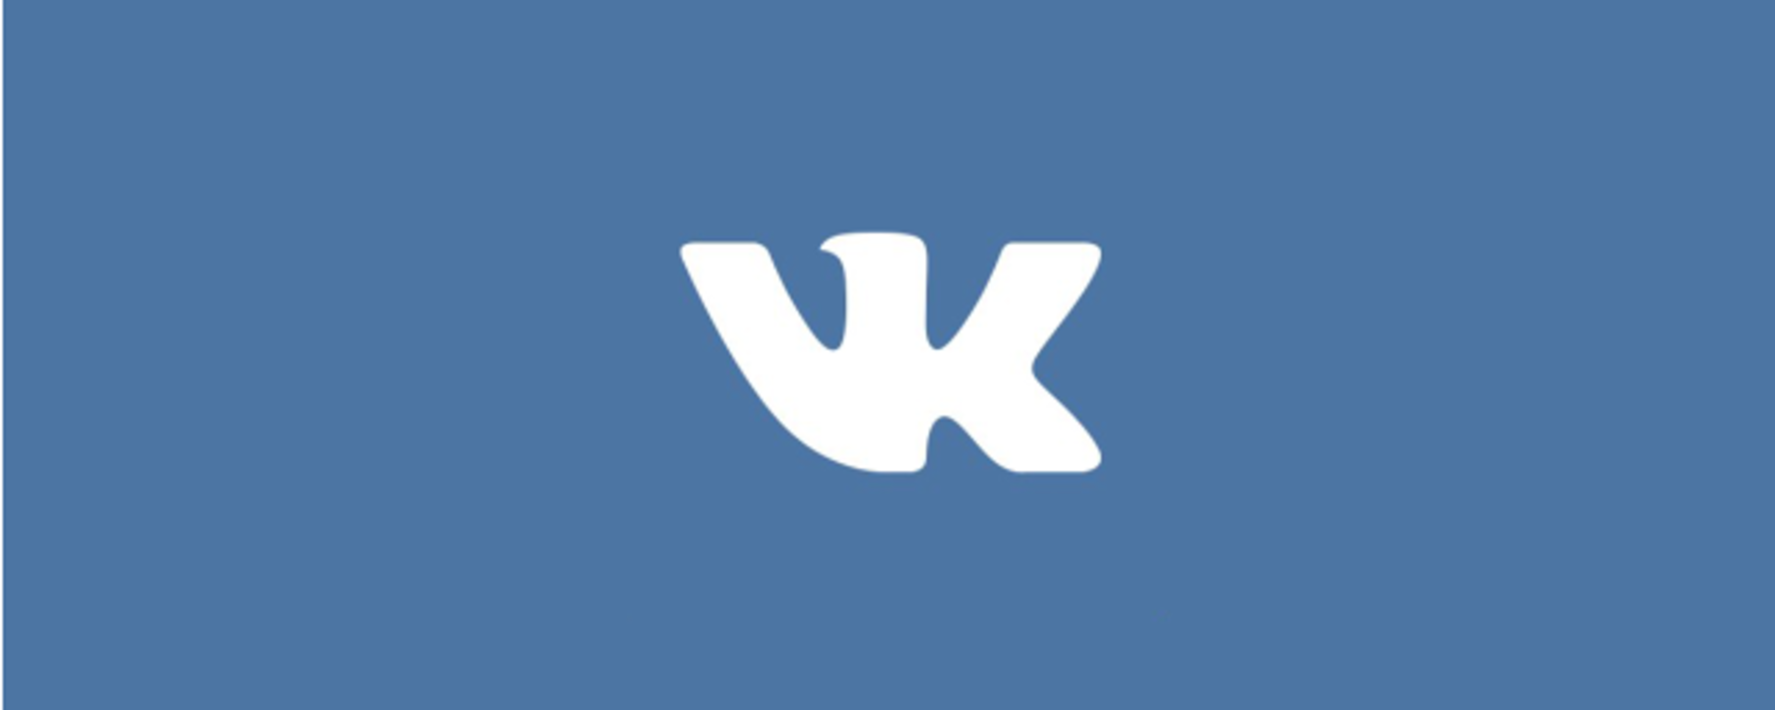 Vk com updates. Логотип ВК. Первый логотип ВК. Значок Dr. Картинки для ВК.